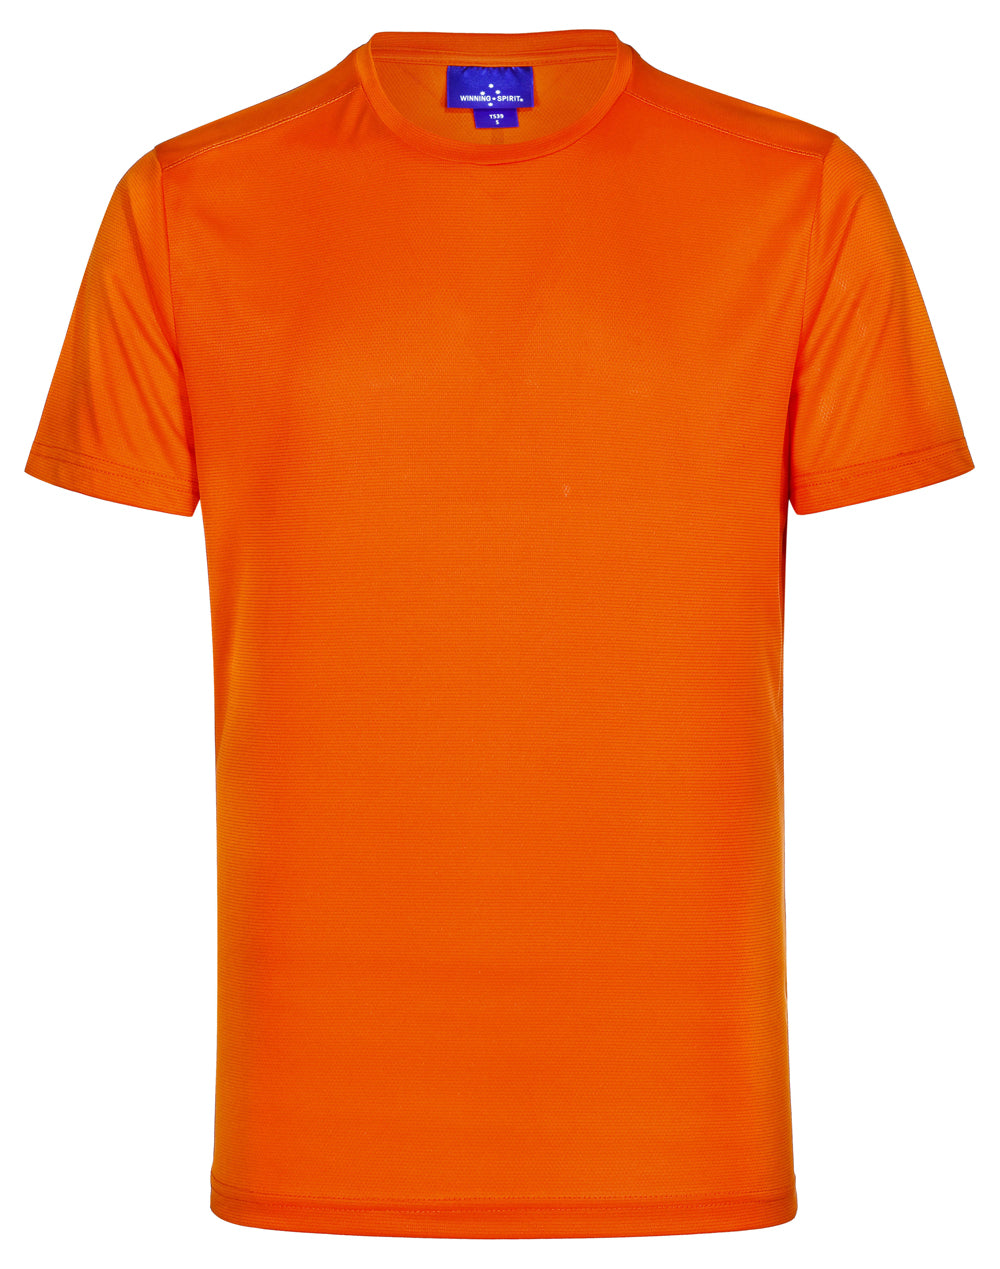 Men's Rapid CoolTM  Ultra Light Tee Shirt TS39